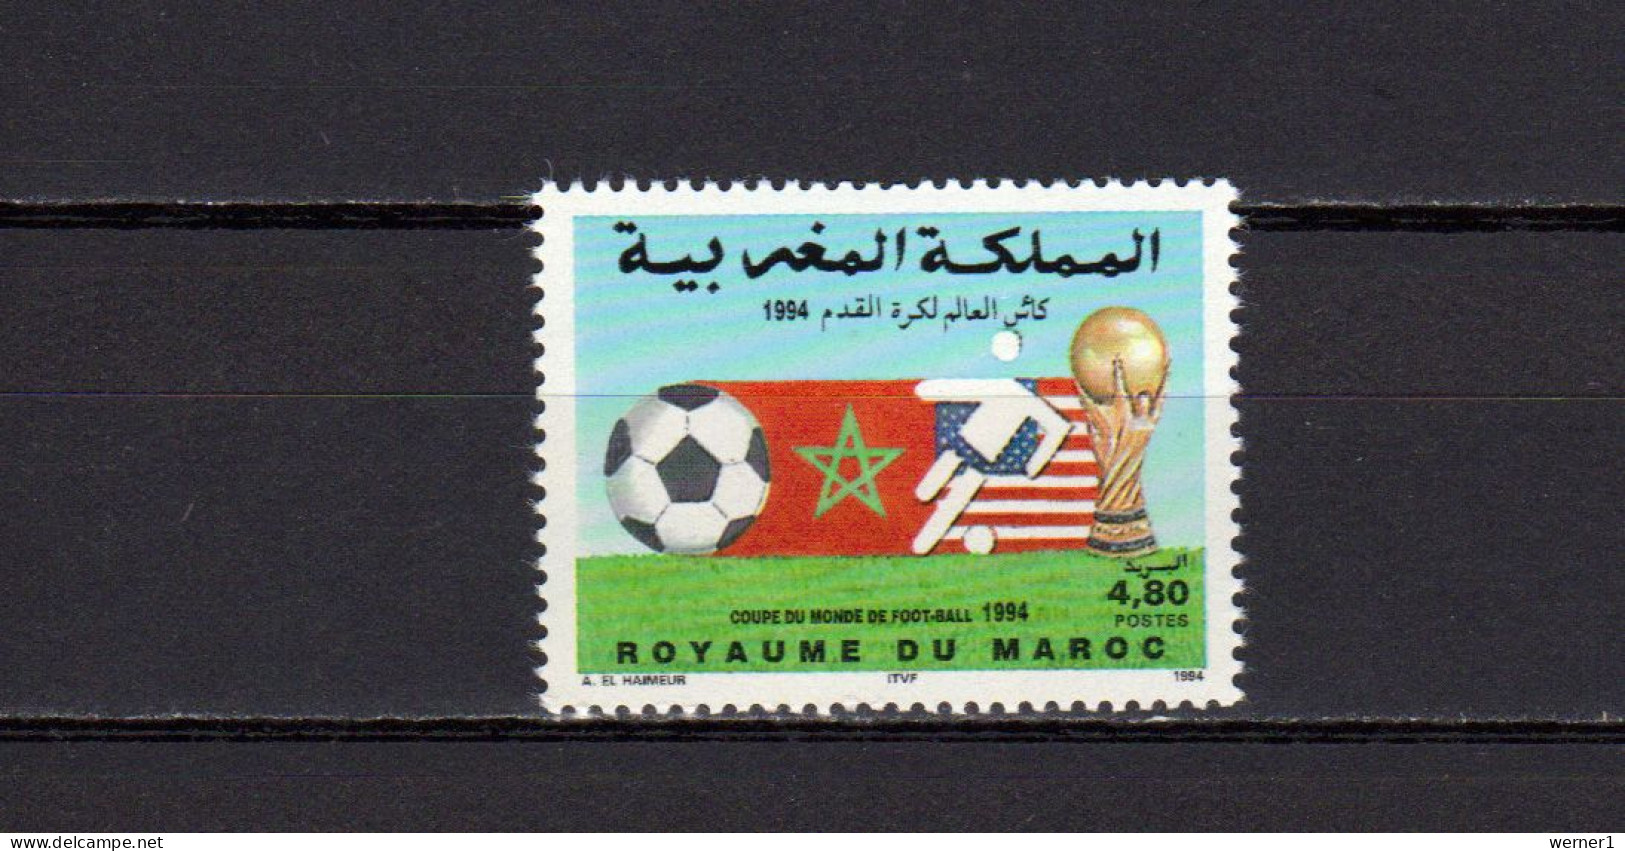 Morocco 1994 Football Soccer World Cup Stamp MNH - 1994 – Estados Unidos